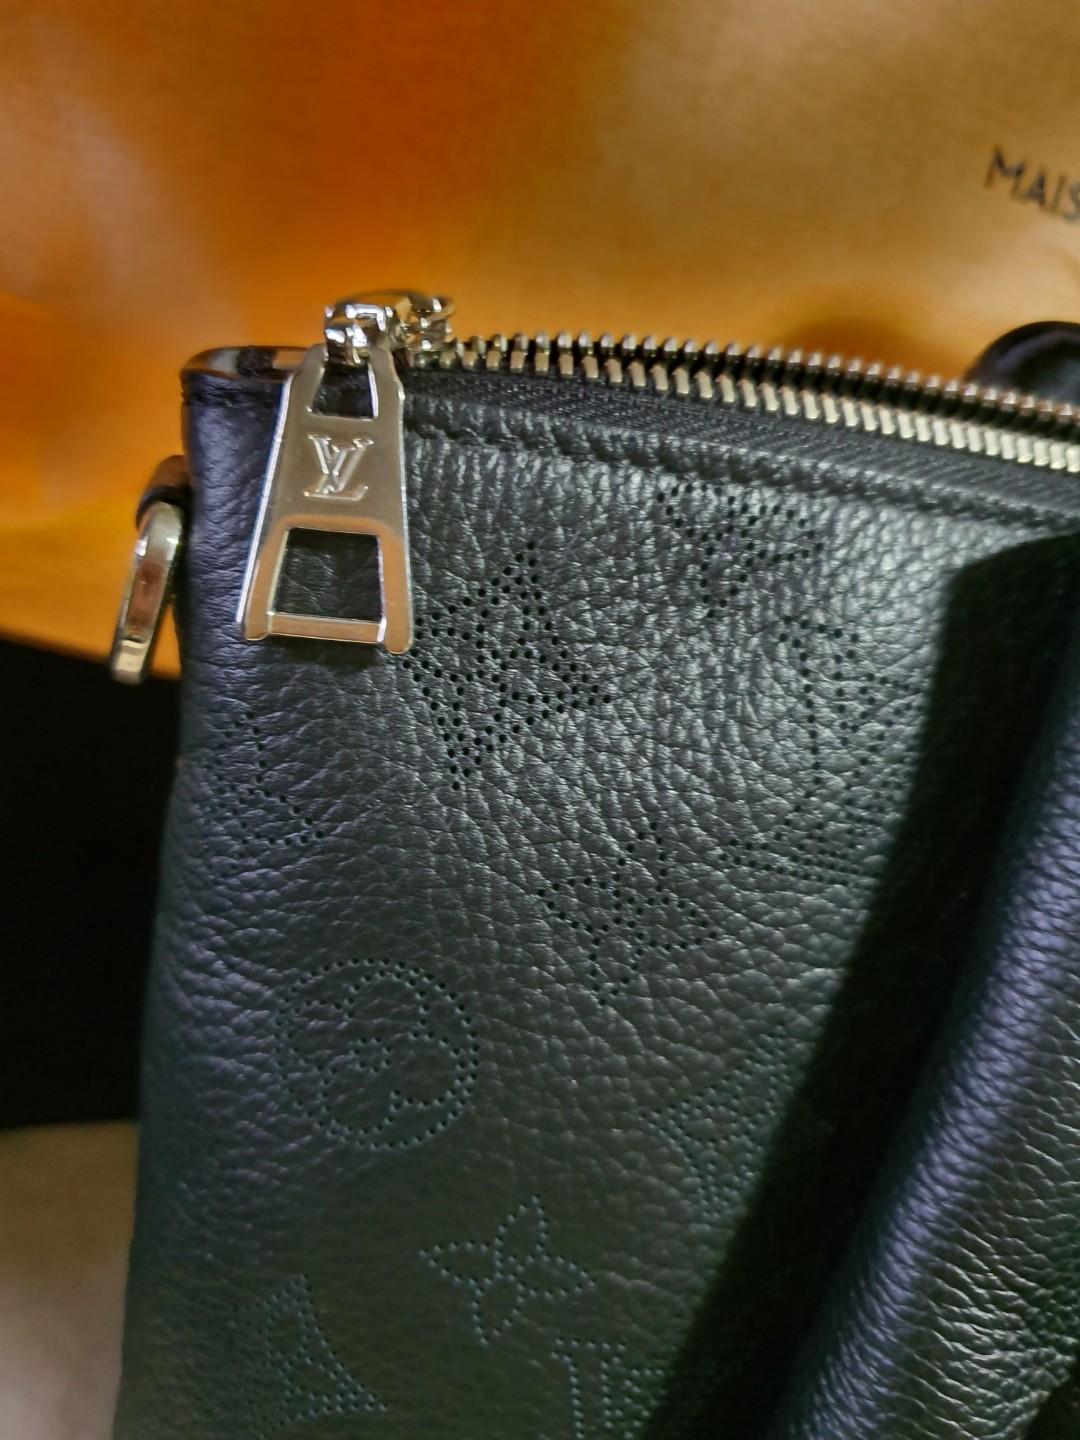 Louis Vuitton LV Haumea Bag Grey Leather - The Lux Portal